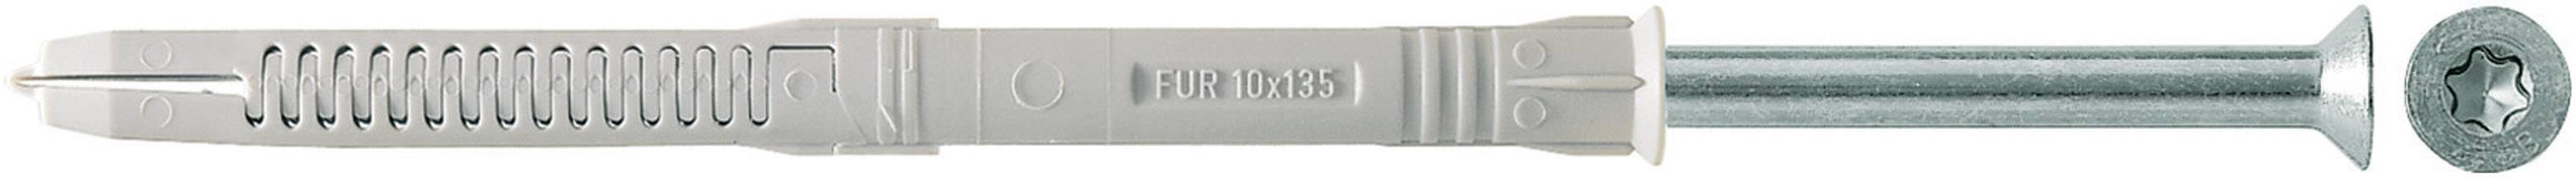 Fischer FUR 10x160 T Plug (long) 160 mm 10 mm 88759 50 pc(s) | Conrad.com